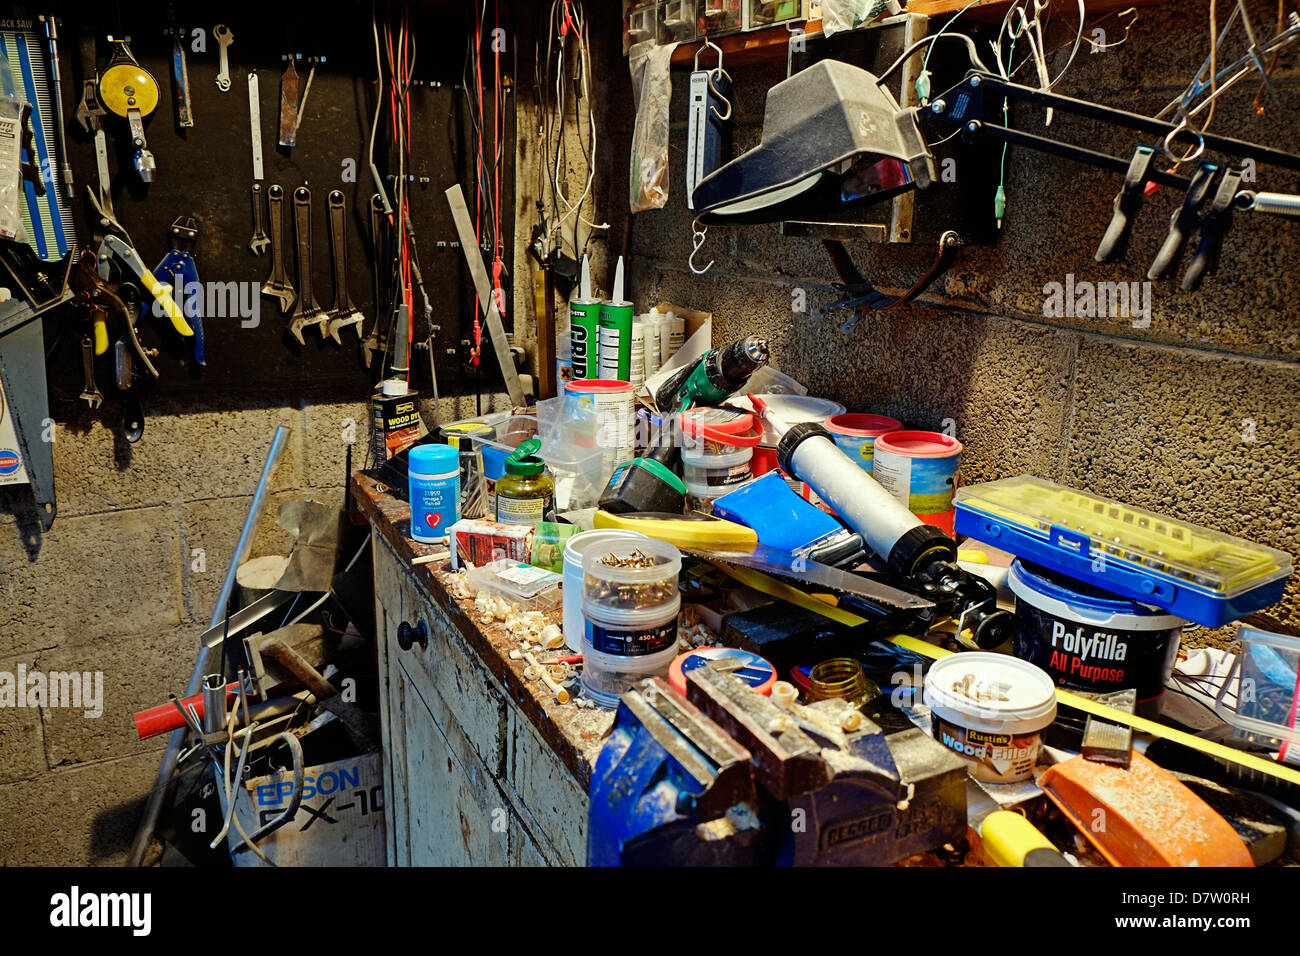 Untidy Workshop, Ireland Stock Photo, Royalty Free Image: 56483157 - Alamy